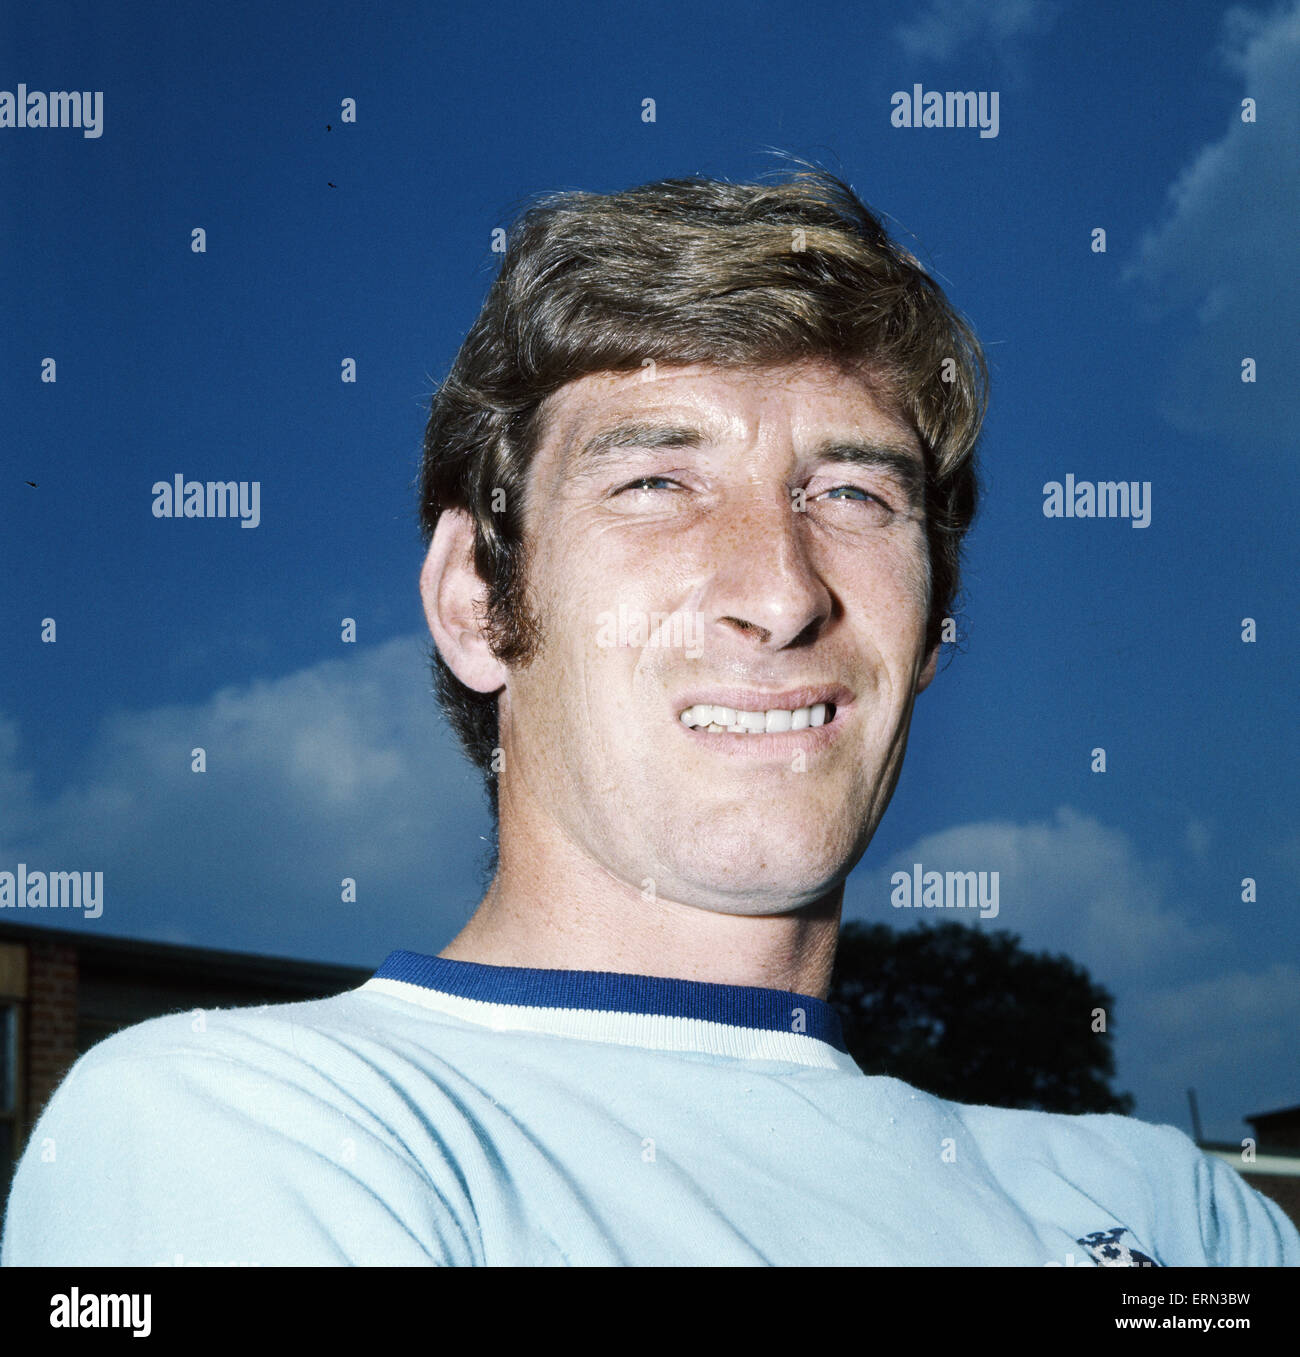 Futbolista de la ciudad de Coventry Geoff fuerte, julio de 1971. Foto de stock